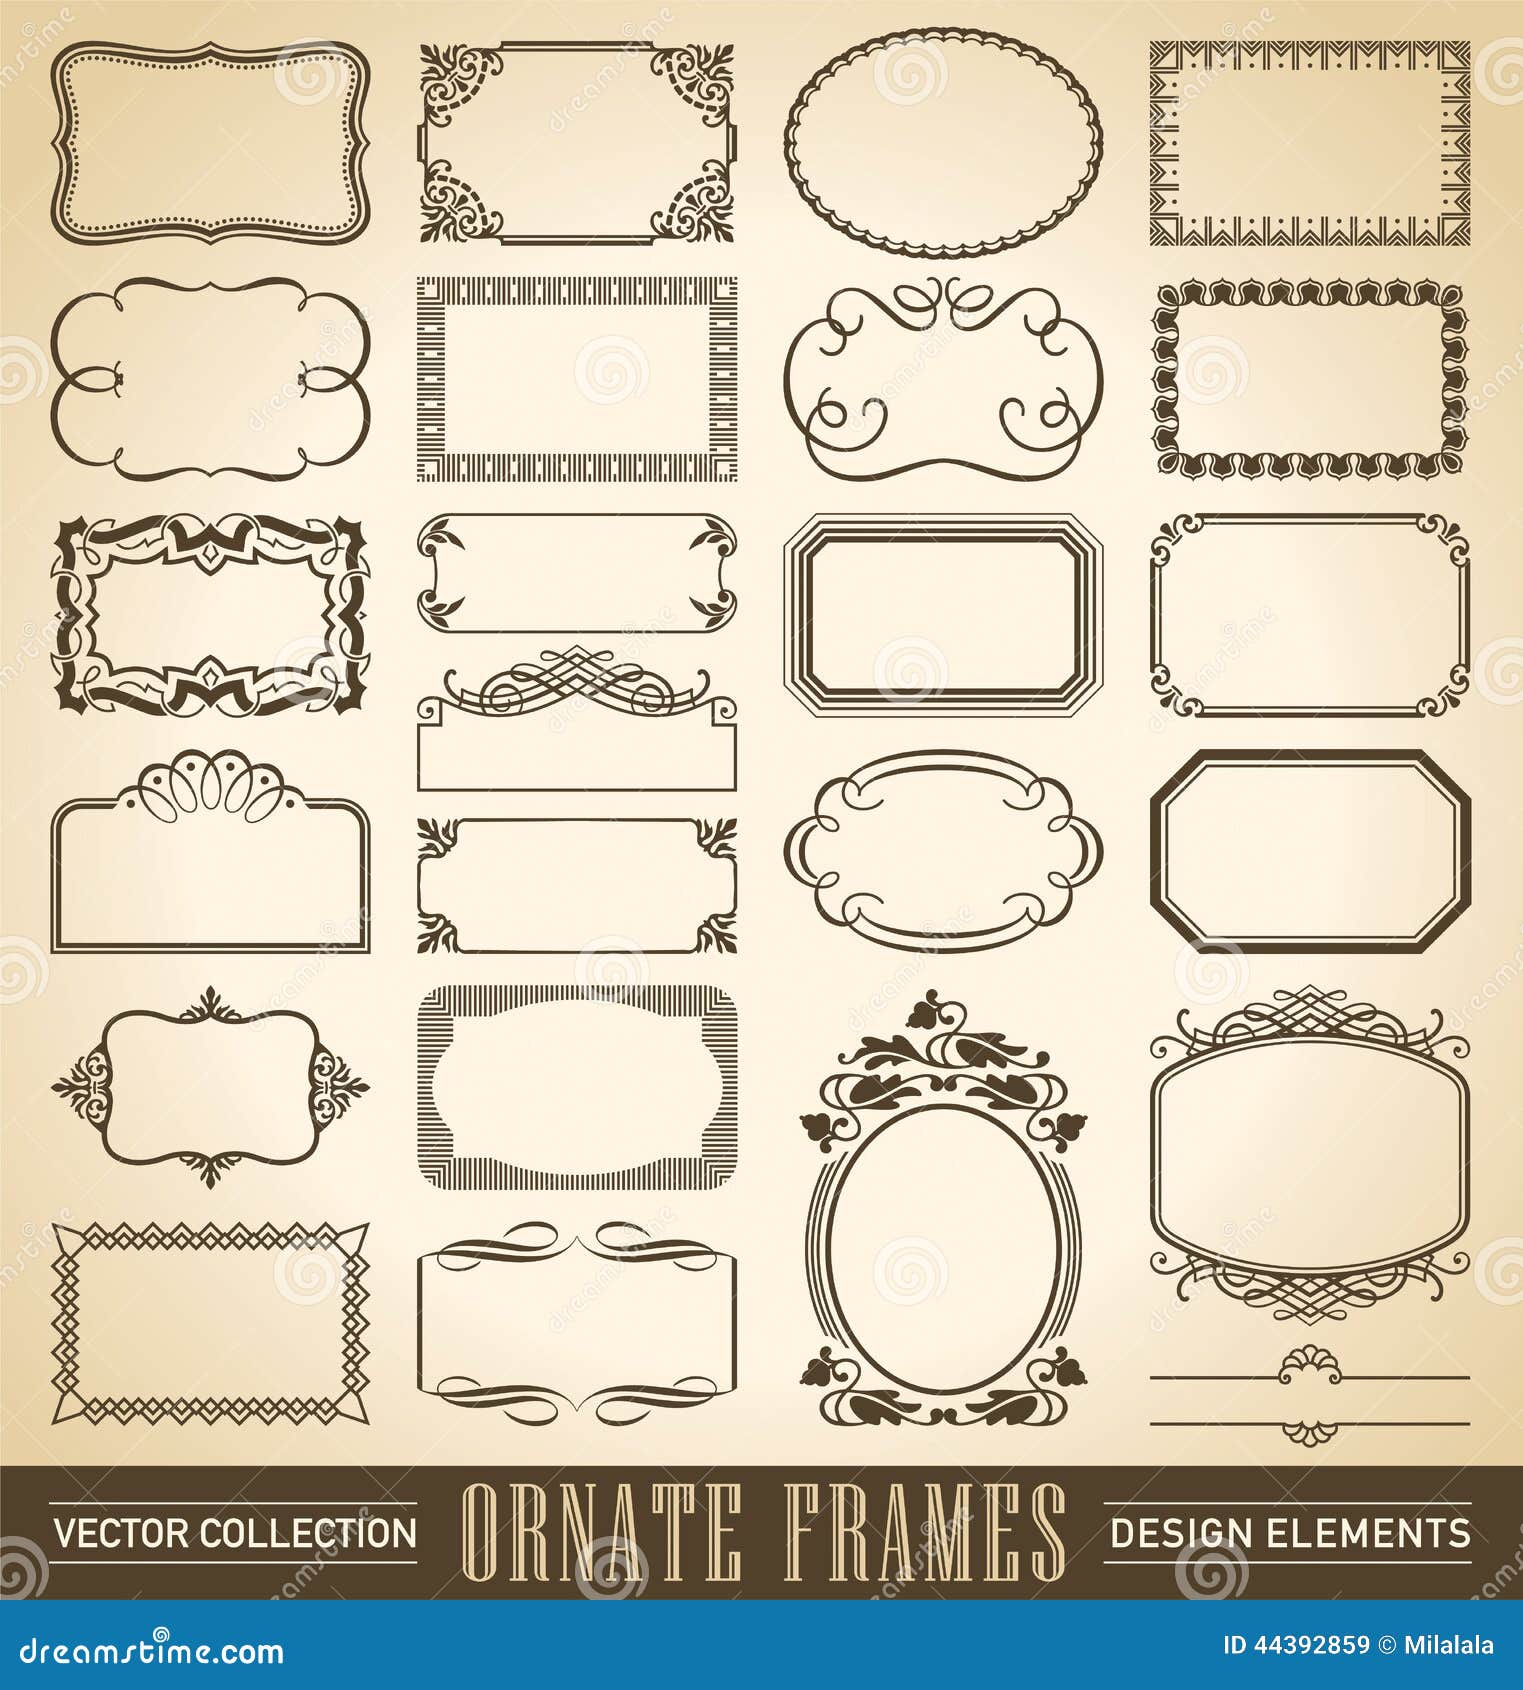 ornate frames set ()